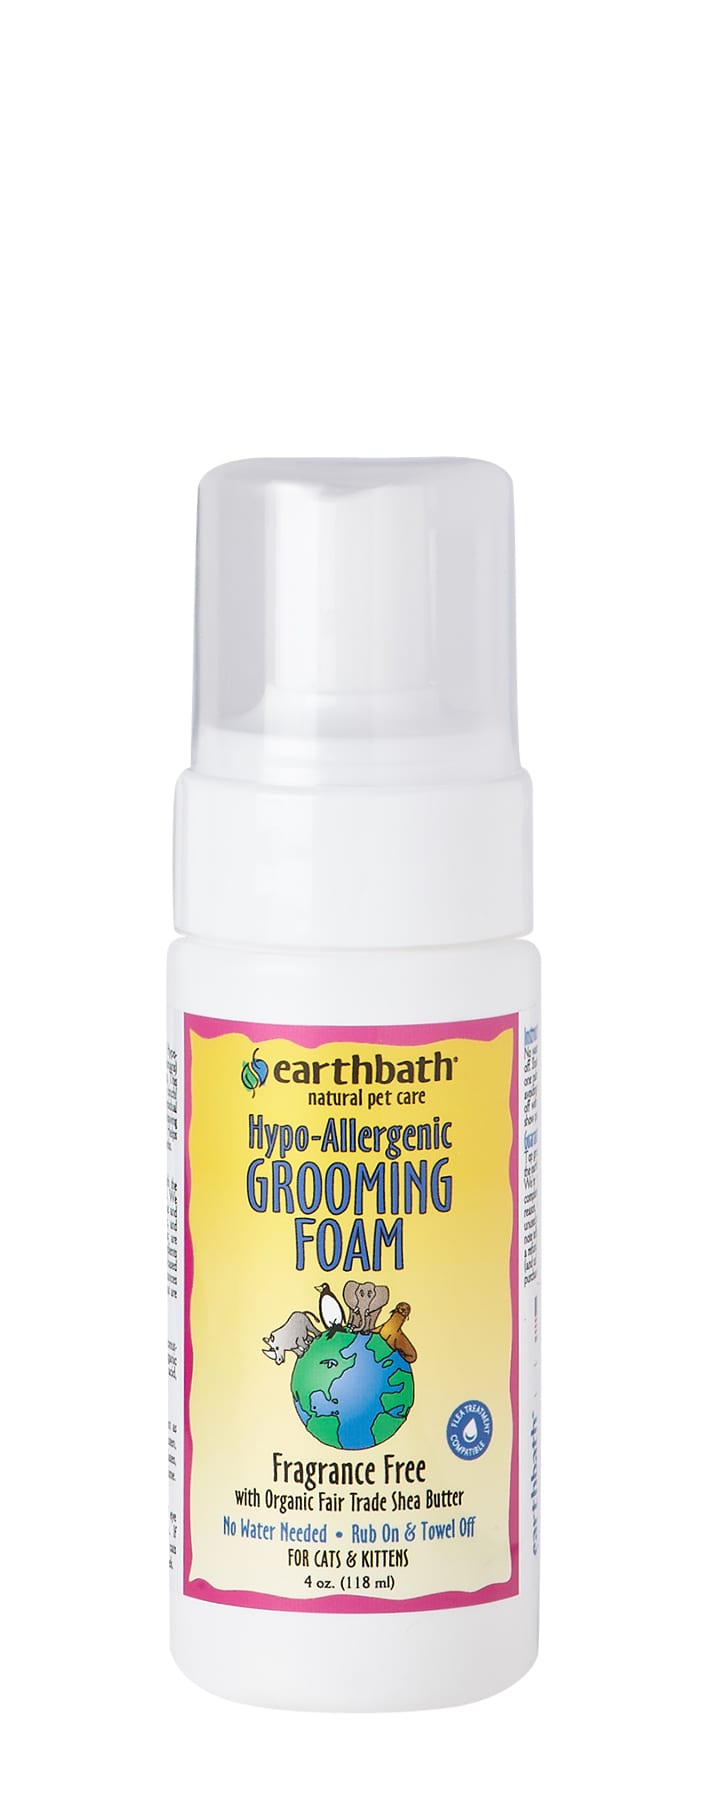 Earthbath Waterless Grooming Foam - For Cat & Kitten Hypoallergenic & Fragrance Free 4oz